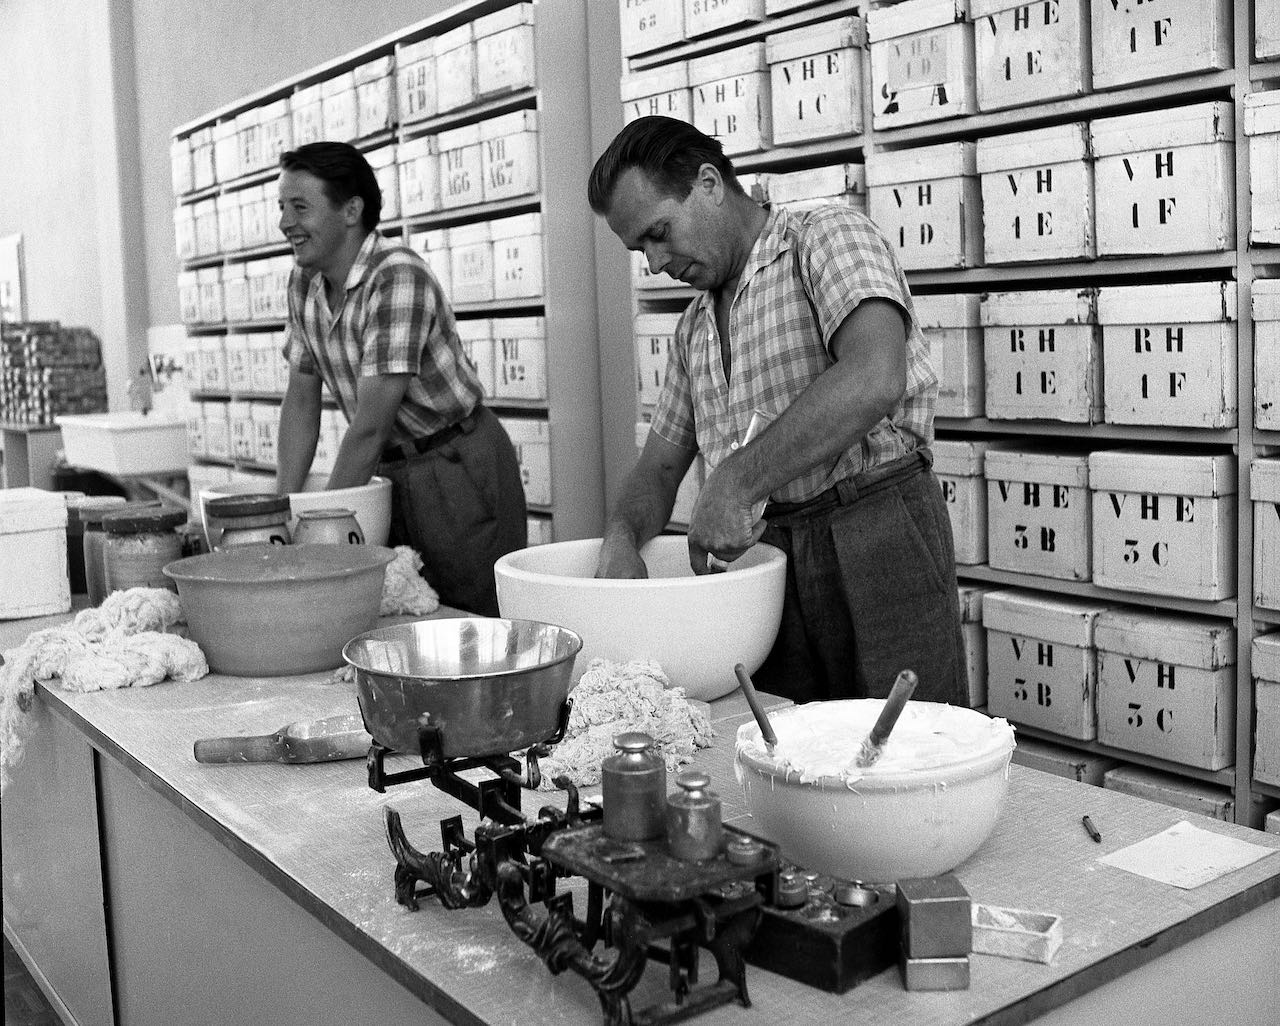 Arbeiter in den 1950er-Jahren beim Zusammenmischen verschiedener Rohstoffe zu einer Masse für die Kunstzahnproduktion.